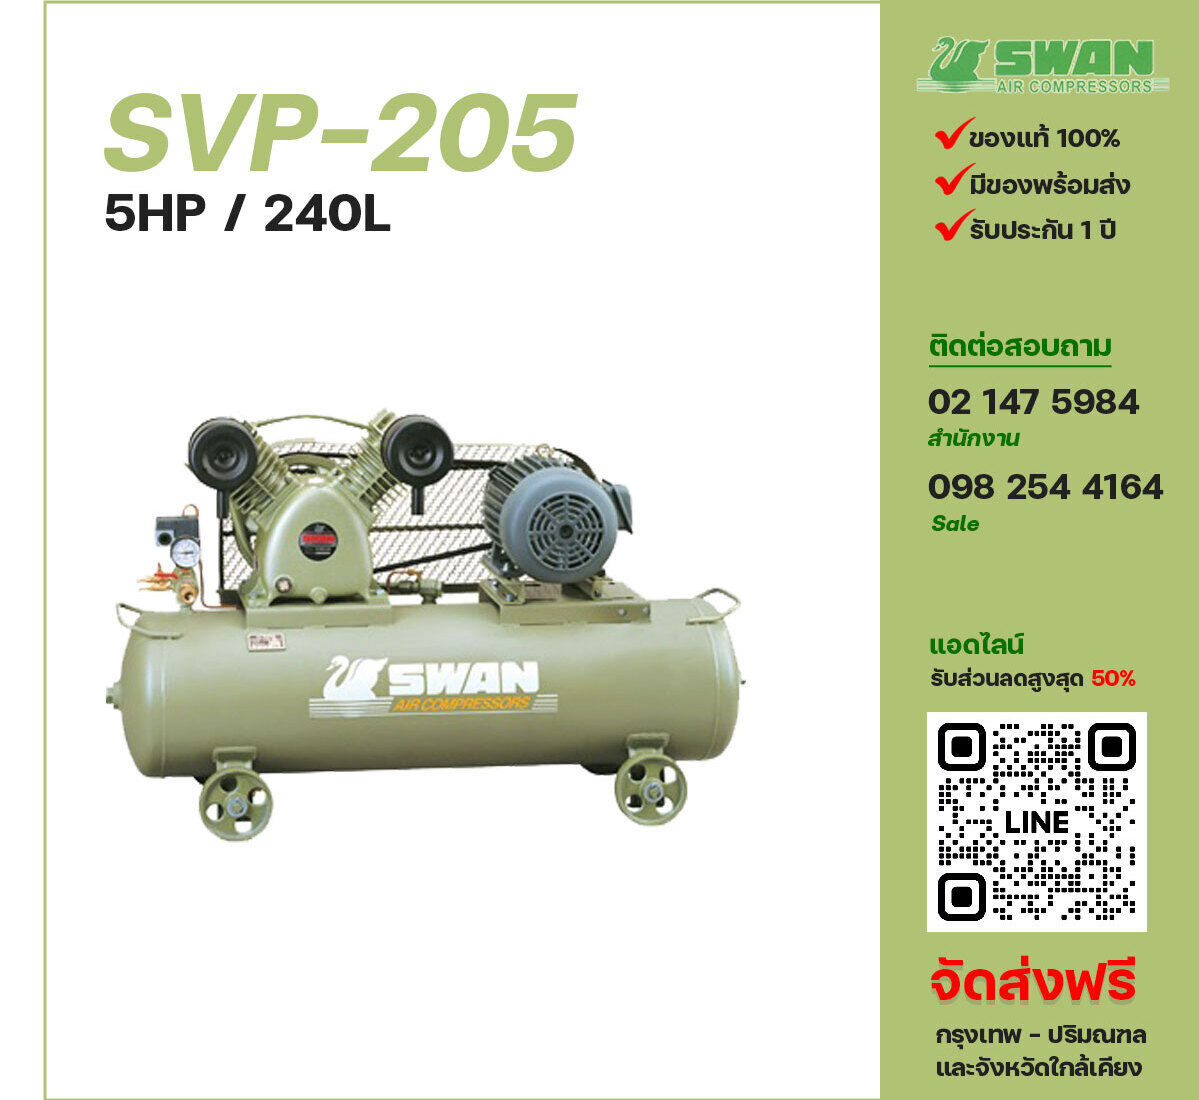 ปั๊มลมสวอน SWAN SVP-205 220V/380V ปั๊มลมลูกสูบ ขนาด 2 สูบ 5 แรงม้า 240 ลิตร SWAN พร้อมมอเตอร์ ไฟ 220V/380V ส่งฟรี กรุงเทพฯ-ปริมณฑล รับประกัน 1 ปี